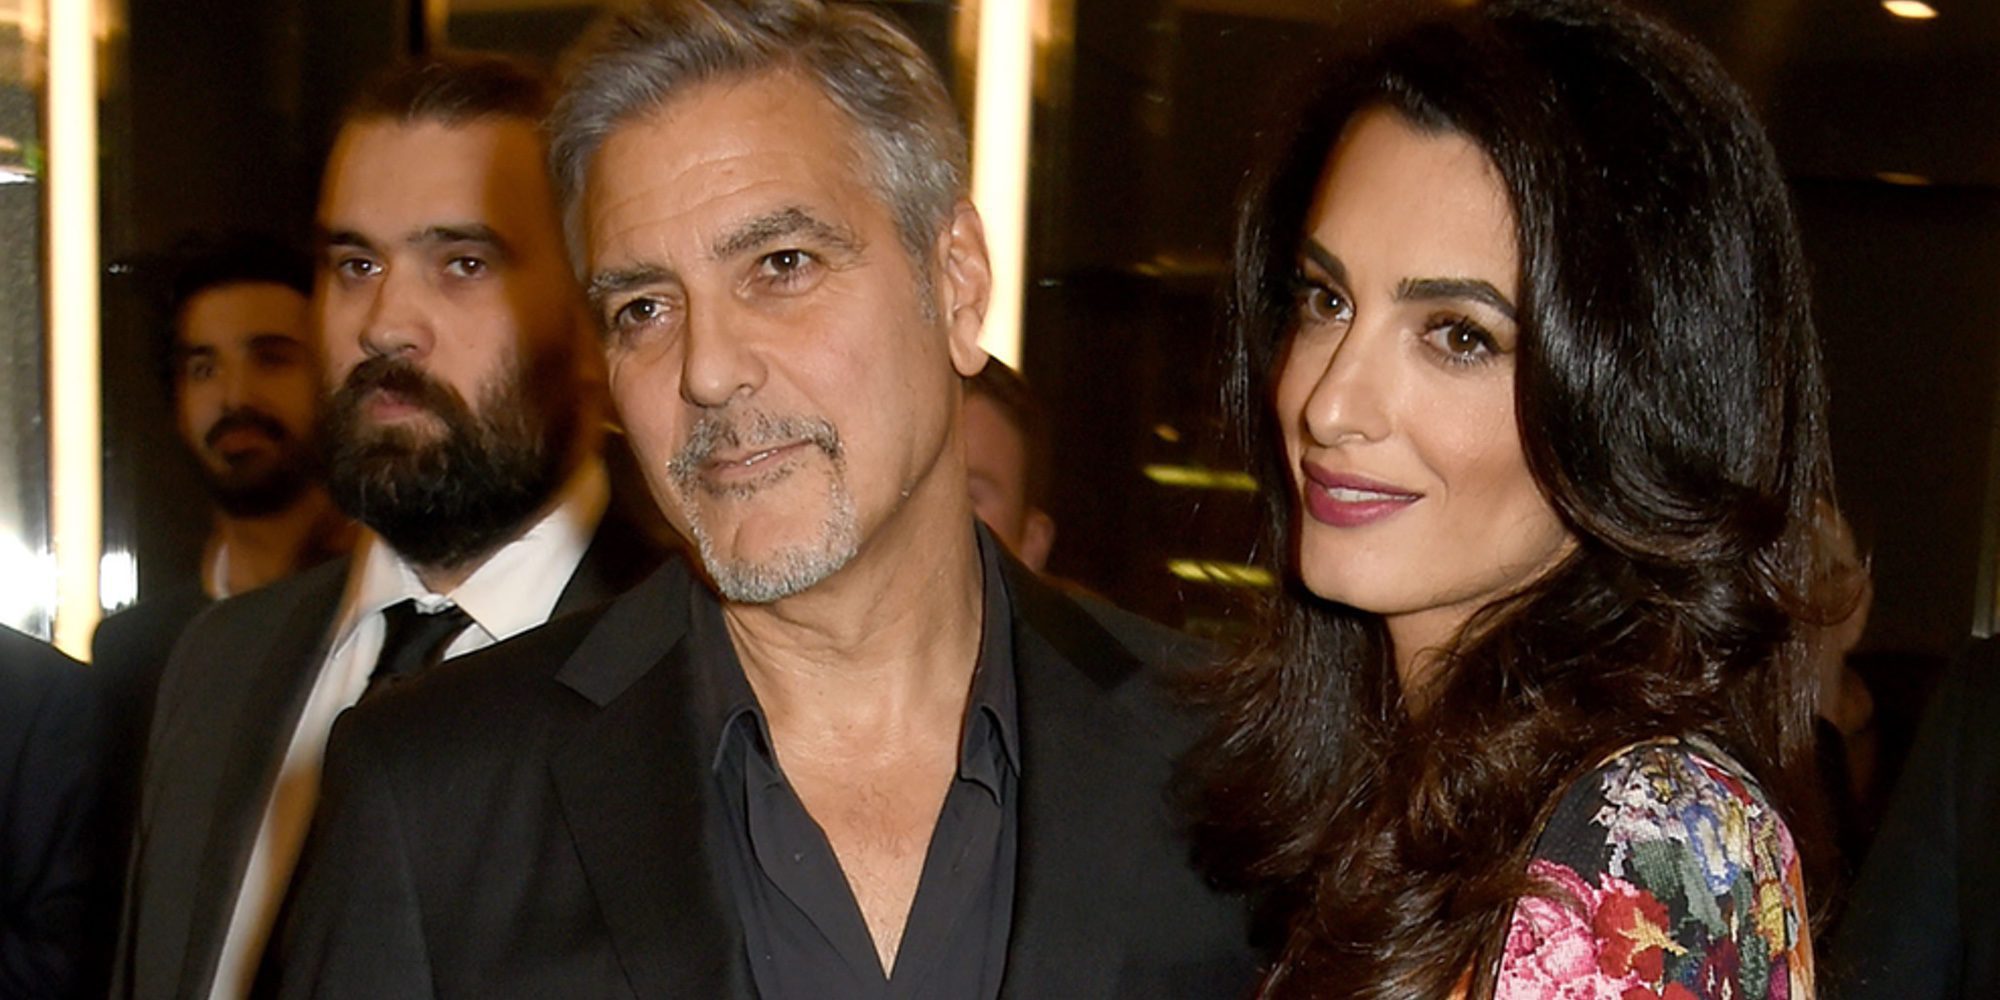 El curioso objeto que George Clooney regaló a los pasajeros de su vuelo por culpa de sus hijos